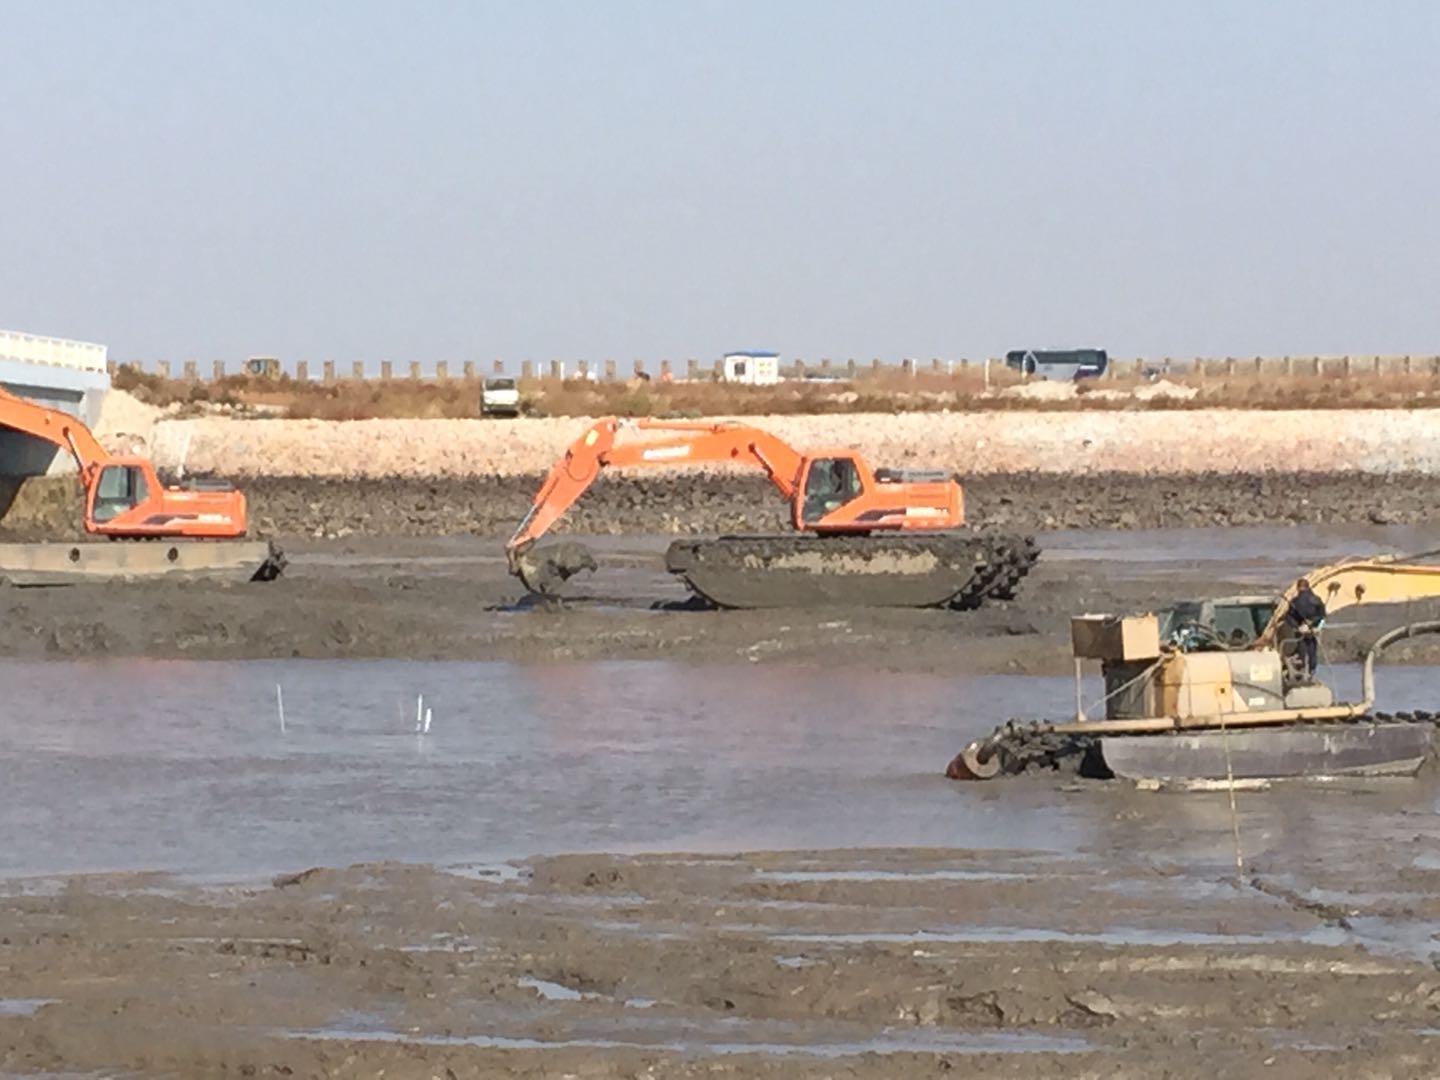 River200 multipurpose swamp amphibious excavator for sale